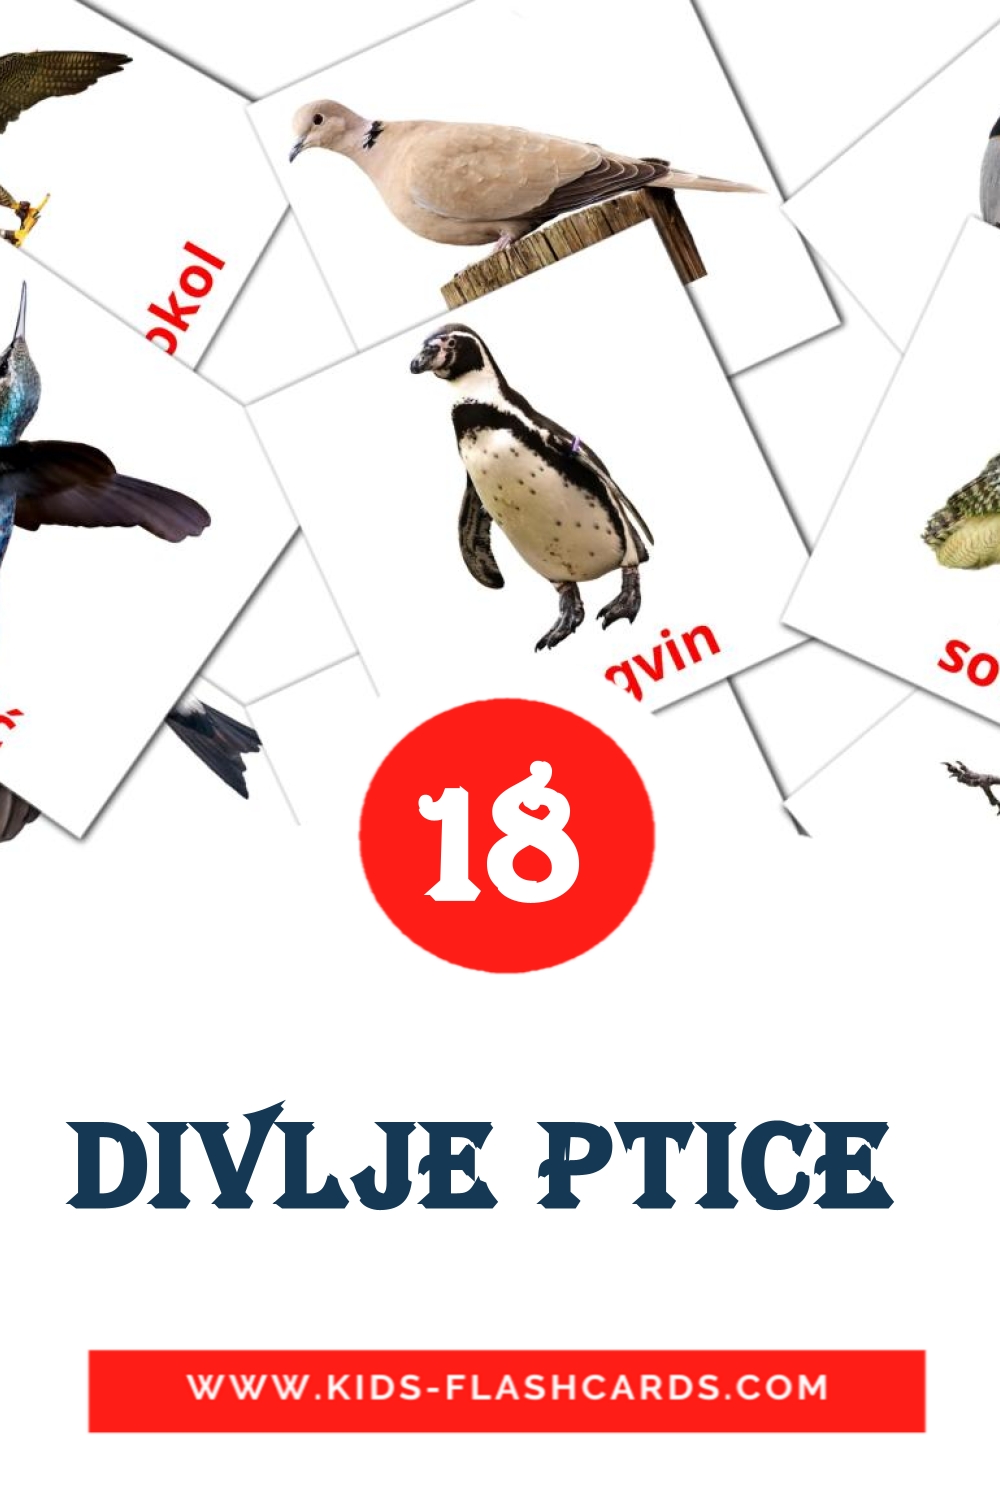 Divlje ptice  на хорватском для Детского Сада (18 карточек)